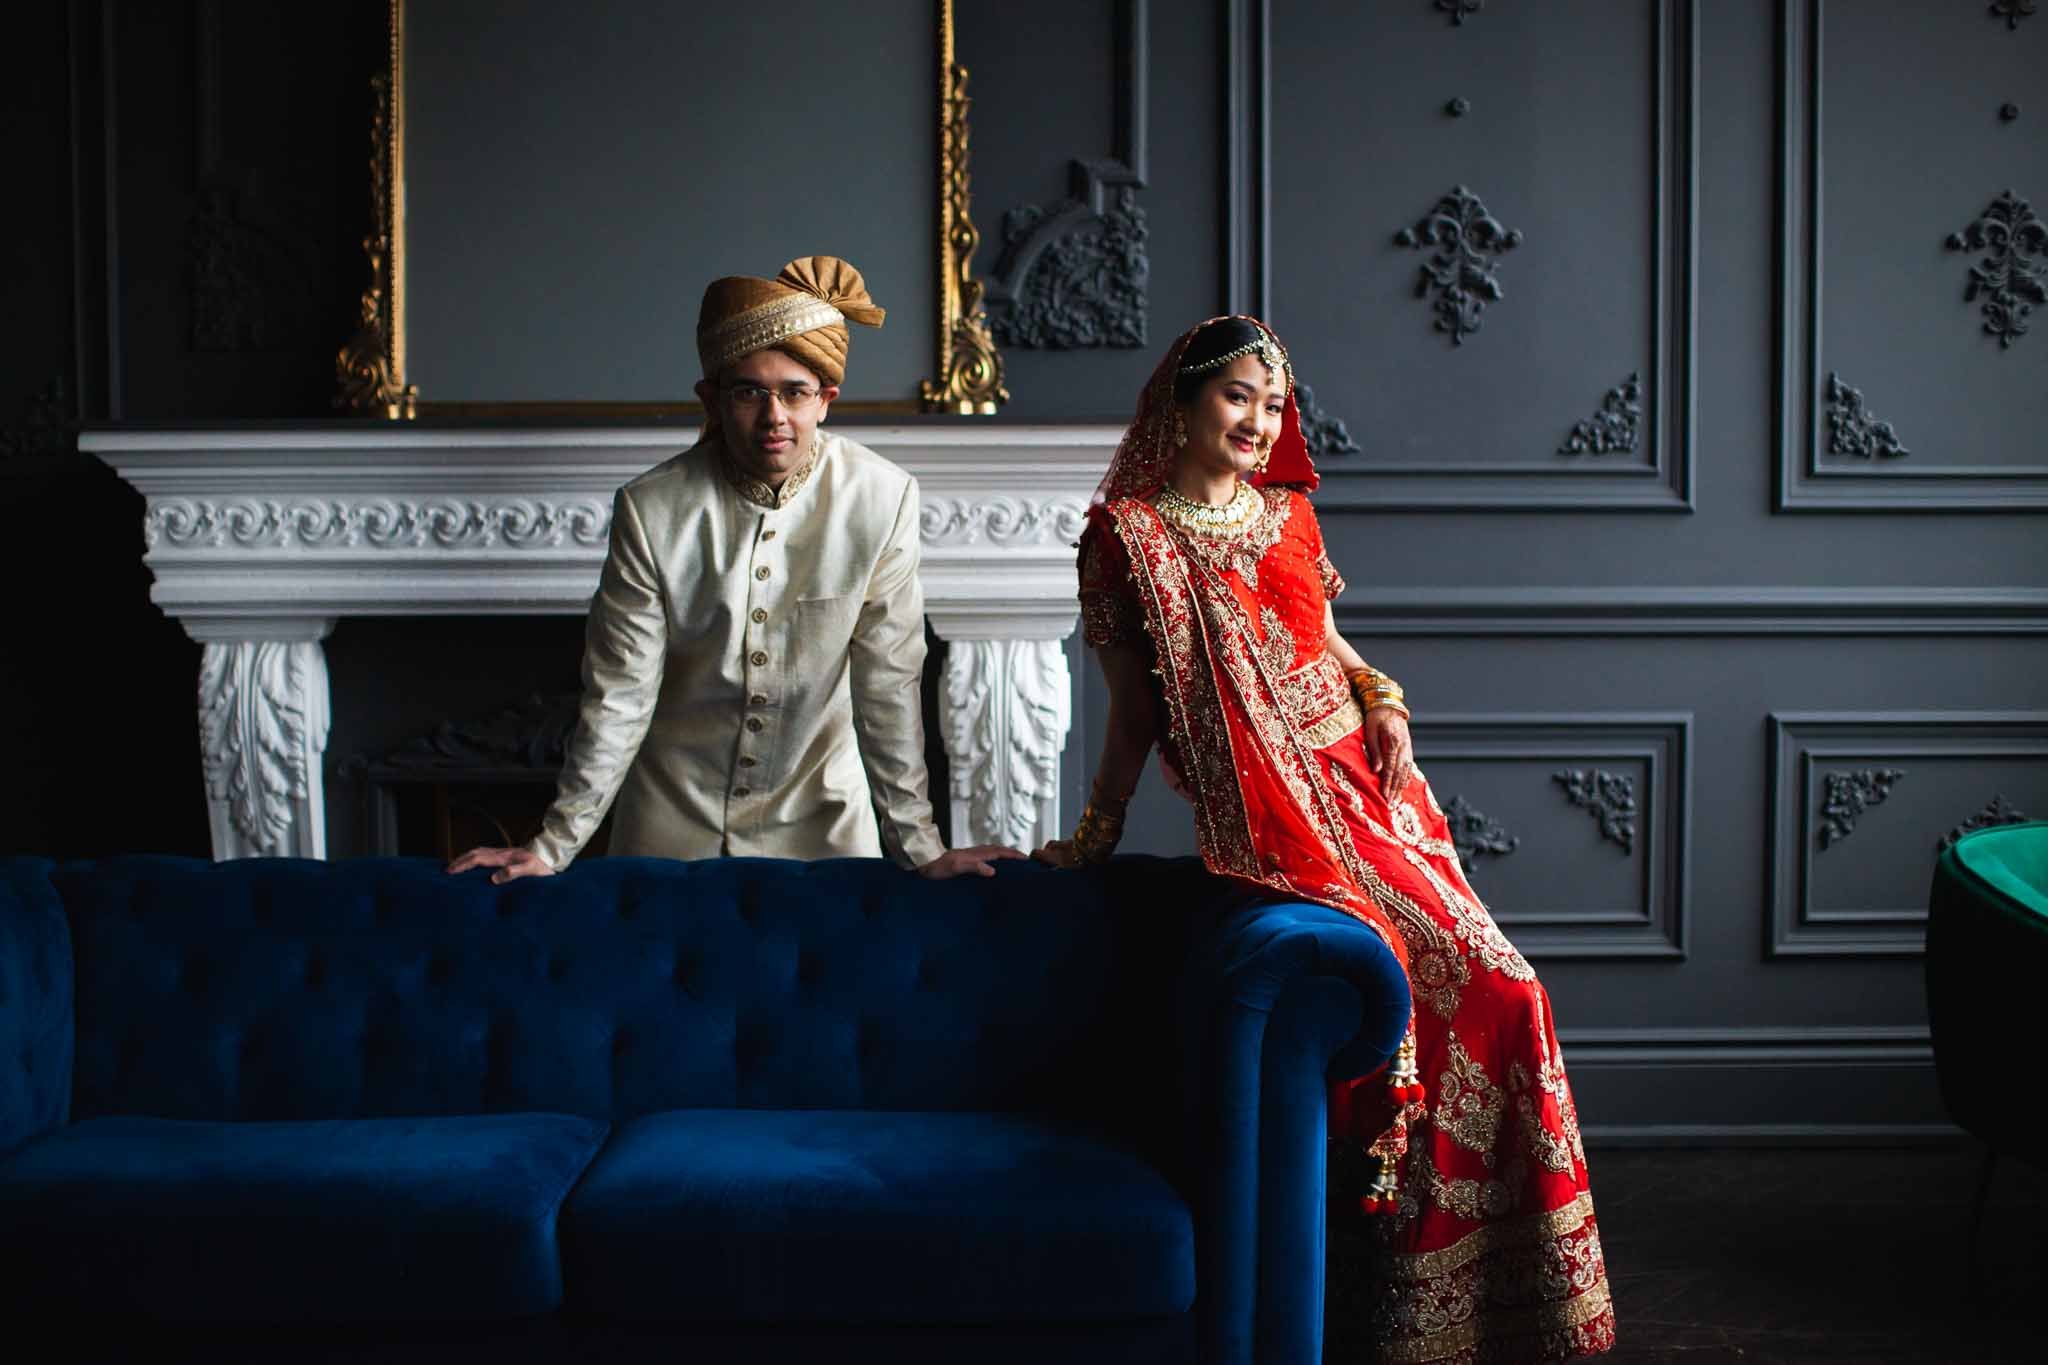 Indian Wedding Couple Photoshoot _ Mint Room Studios Toronto-46.jpg